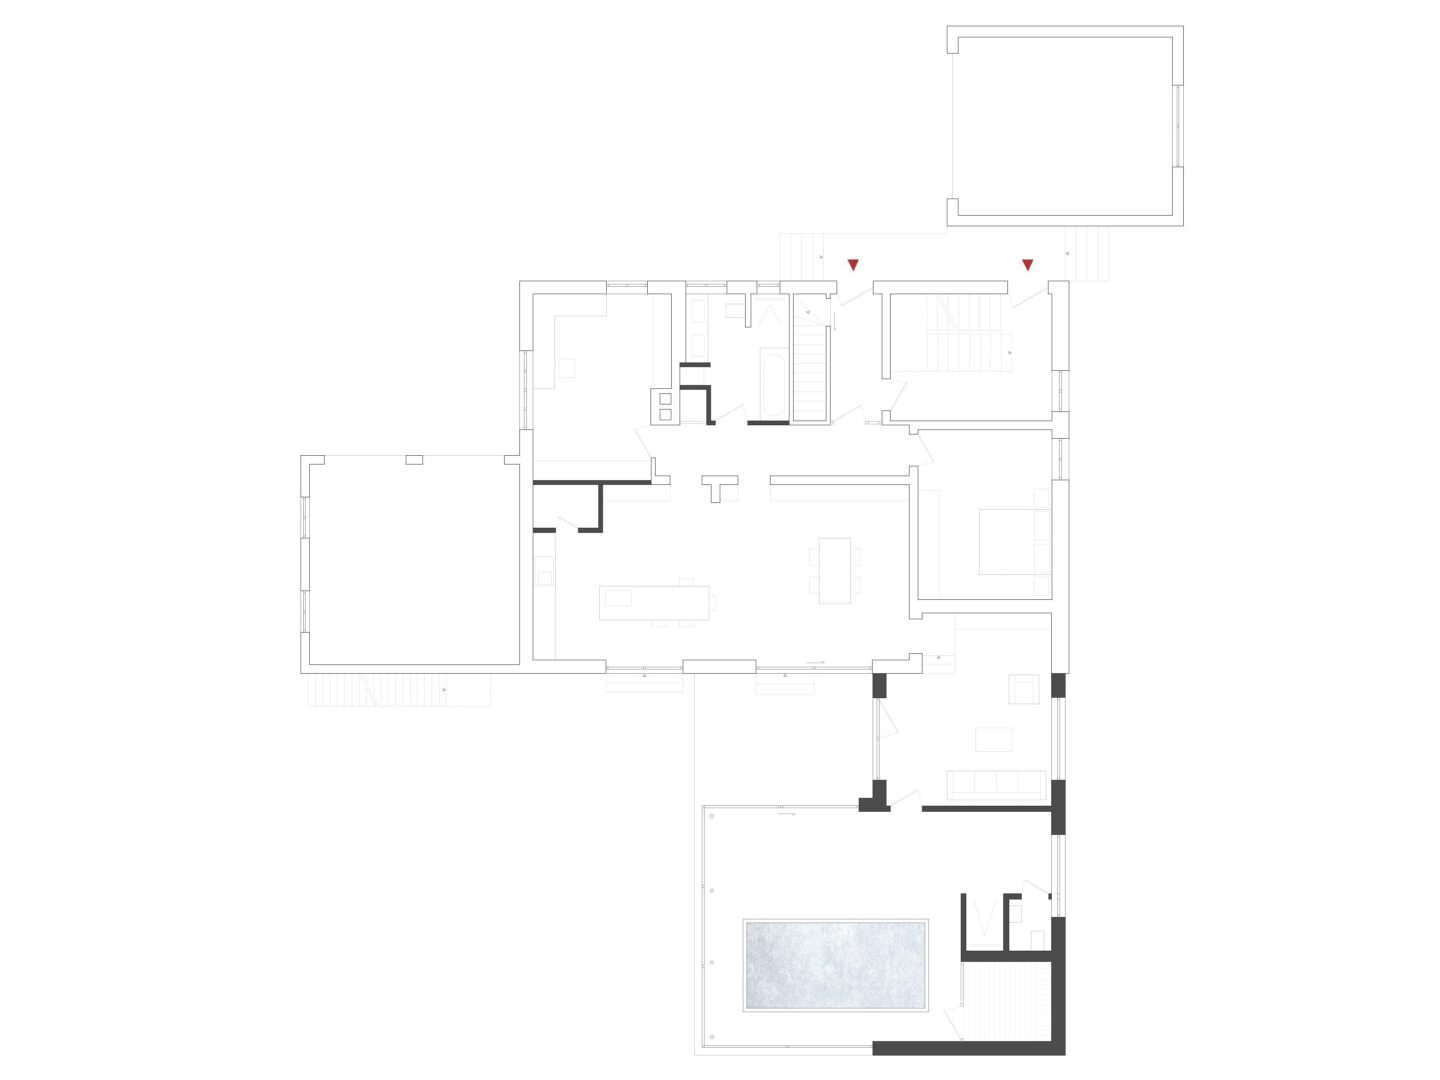 Grundriss des Erdgeschosses eines Einfamilienhauses mit Poolhaus